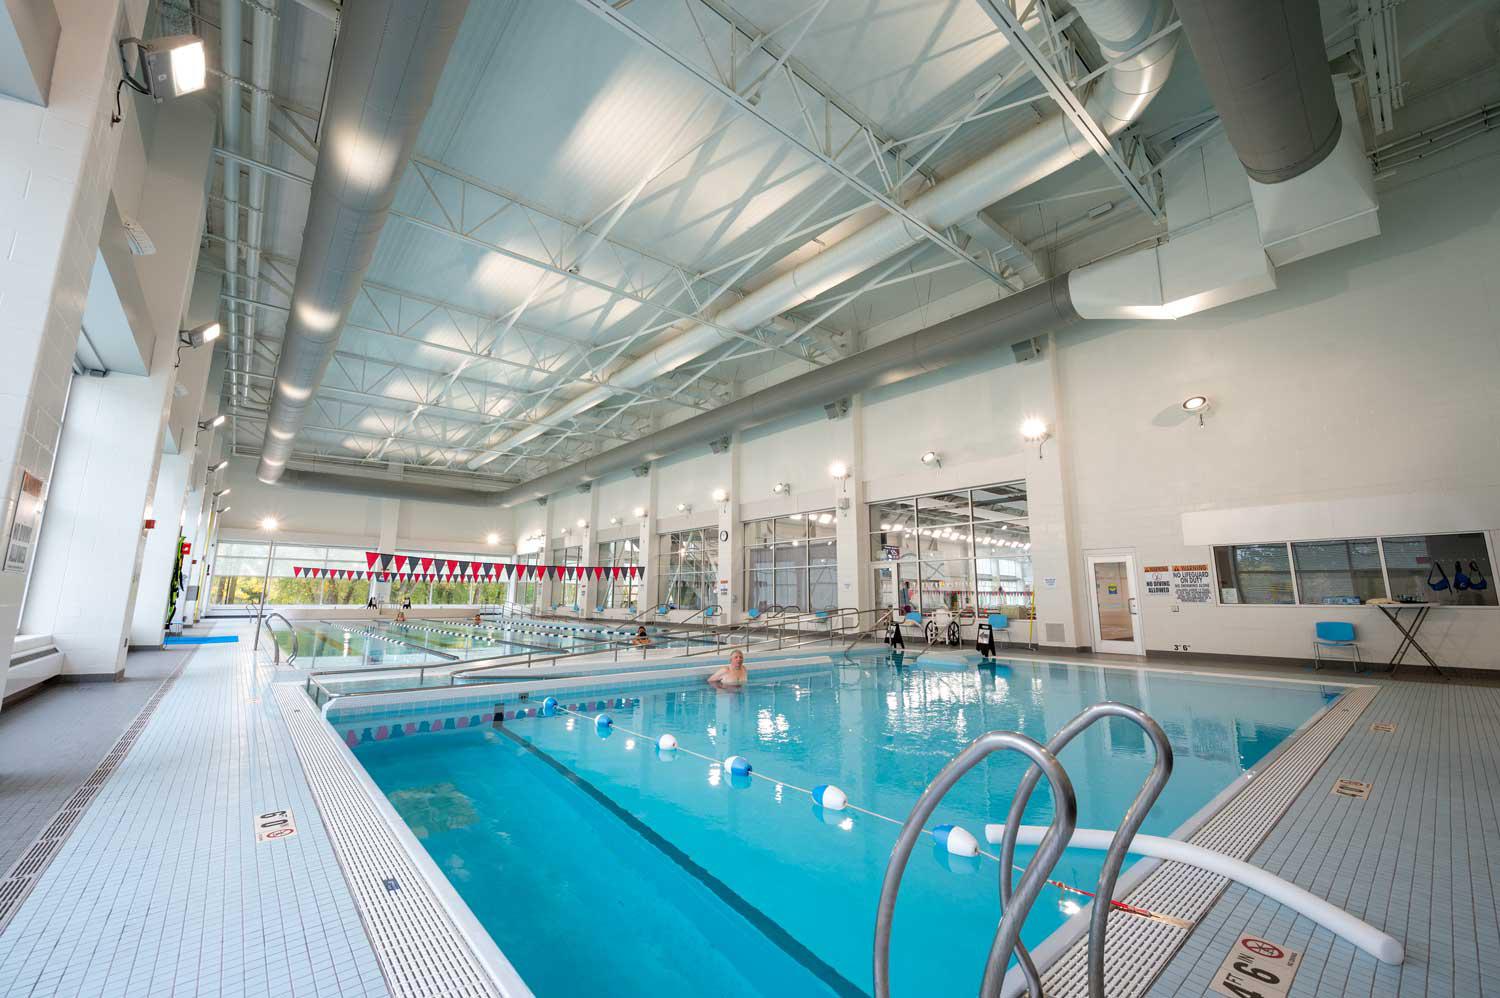 Swim Lessons at Elkhart Health & Aquatics